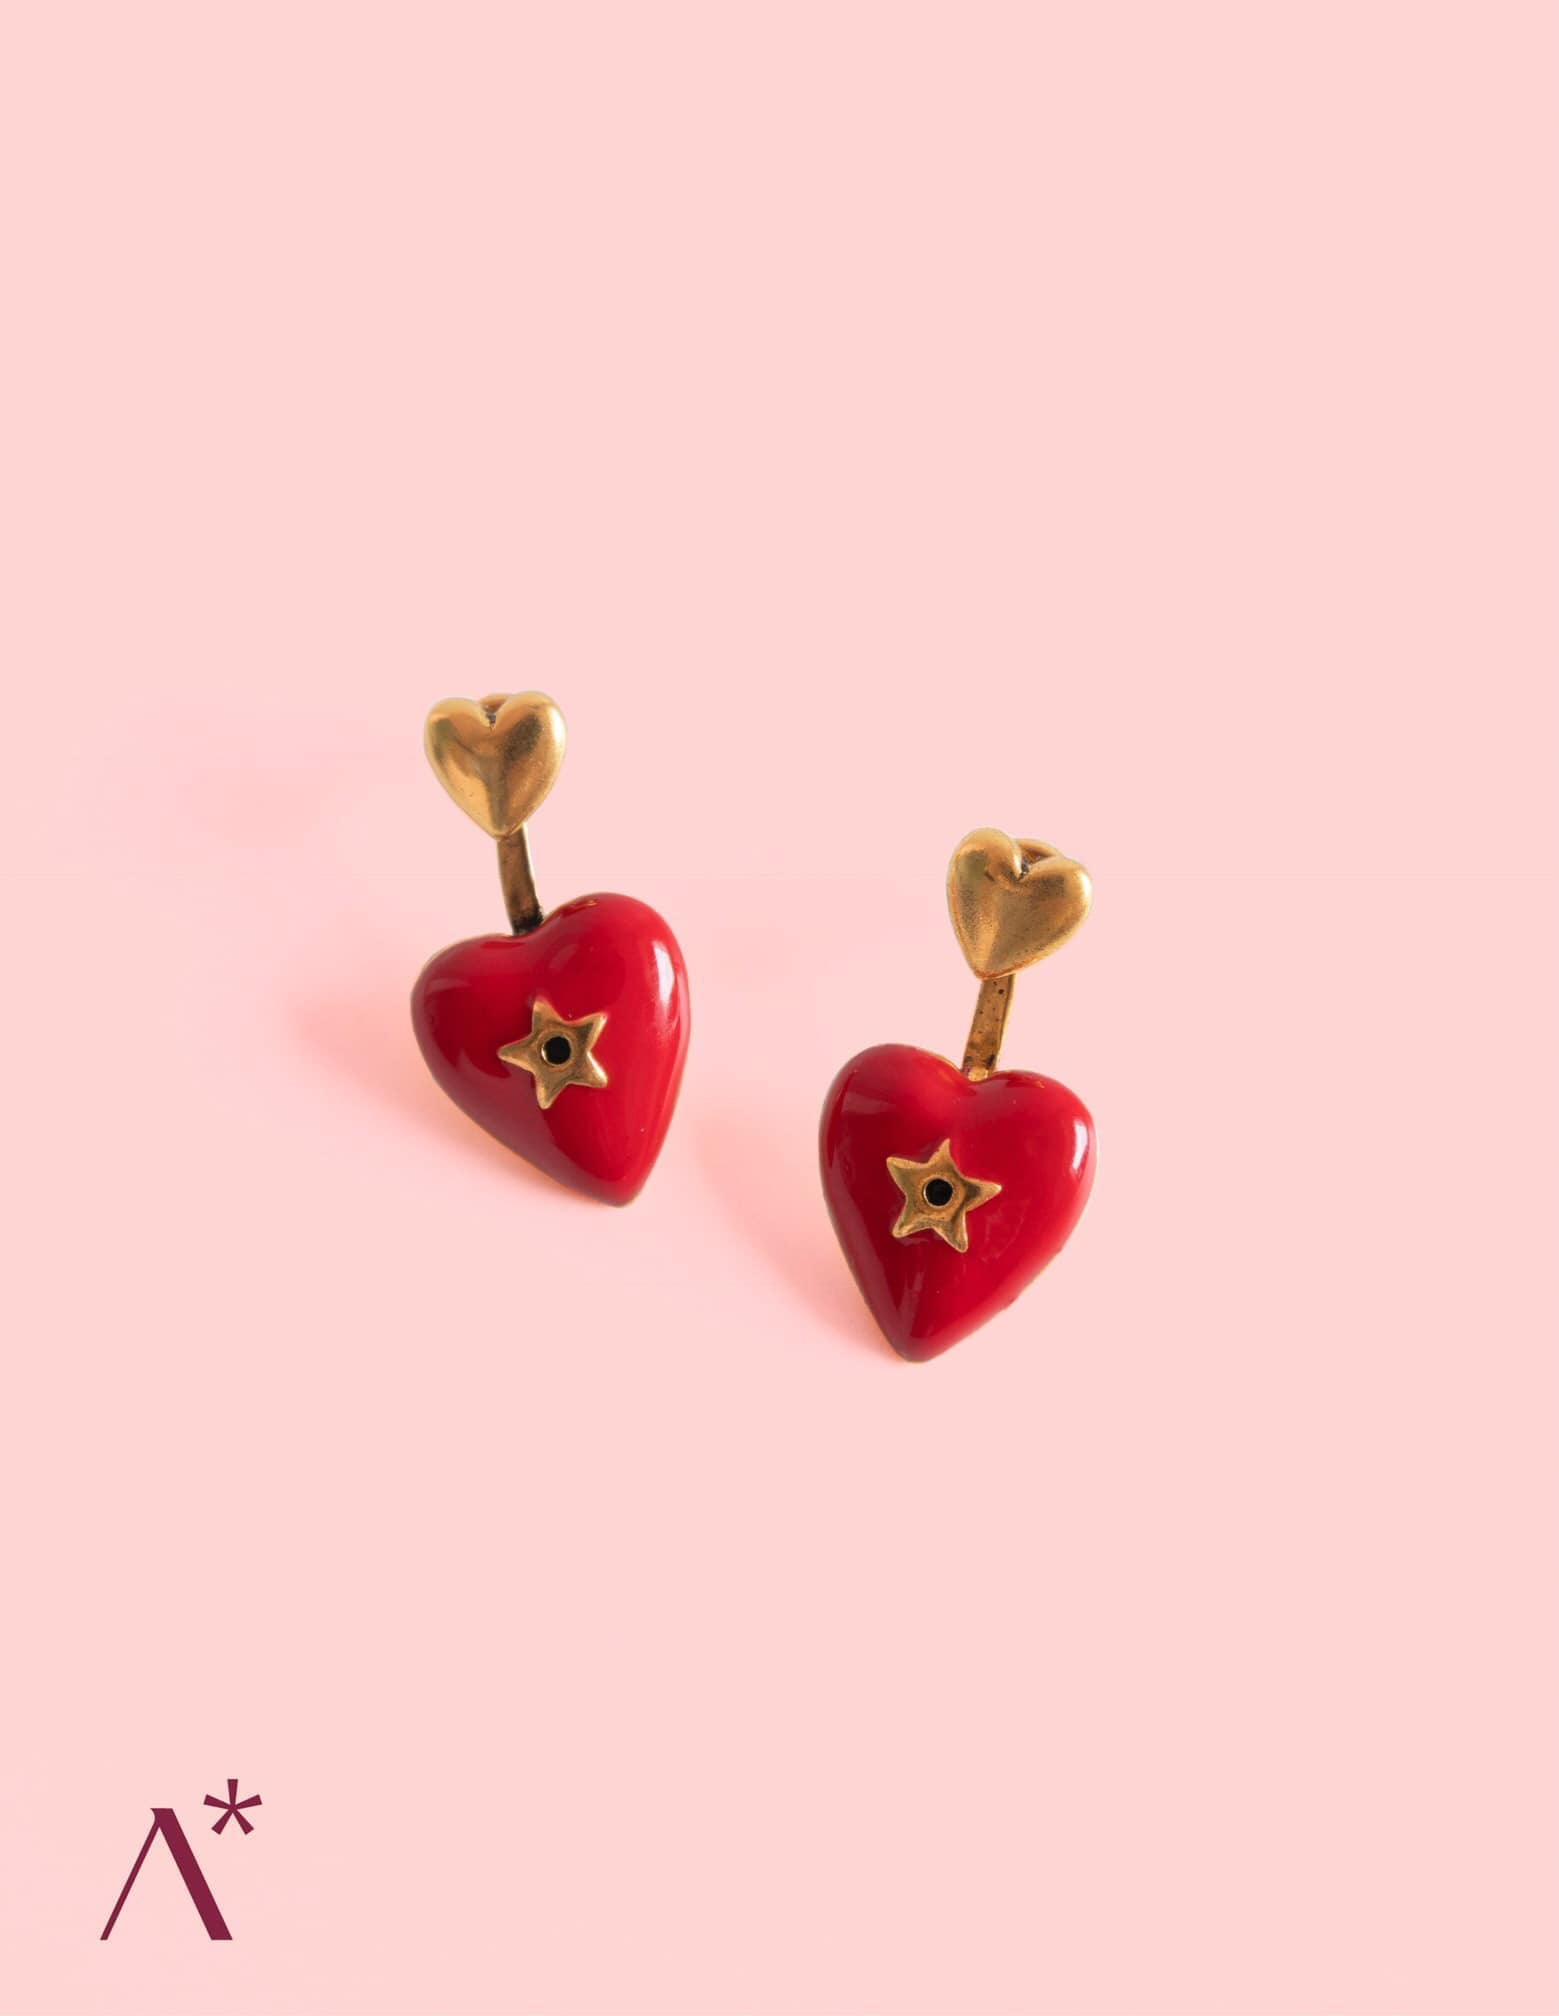 The Heart Earrings